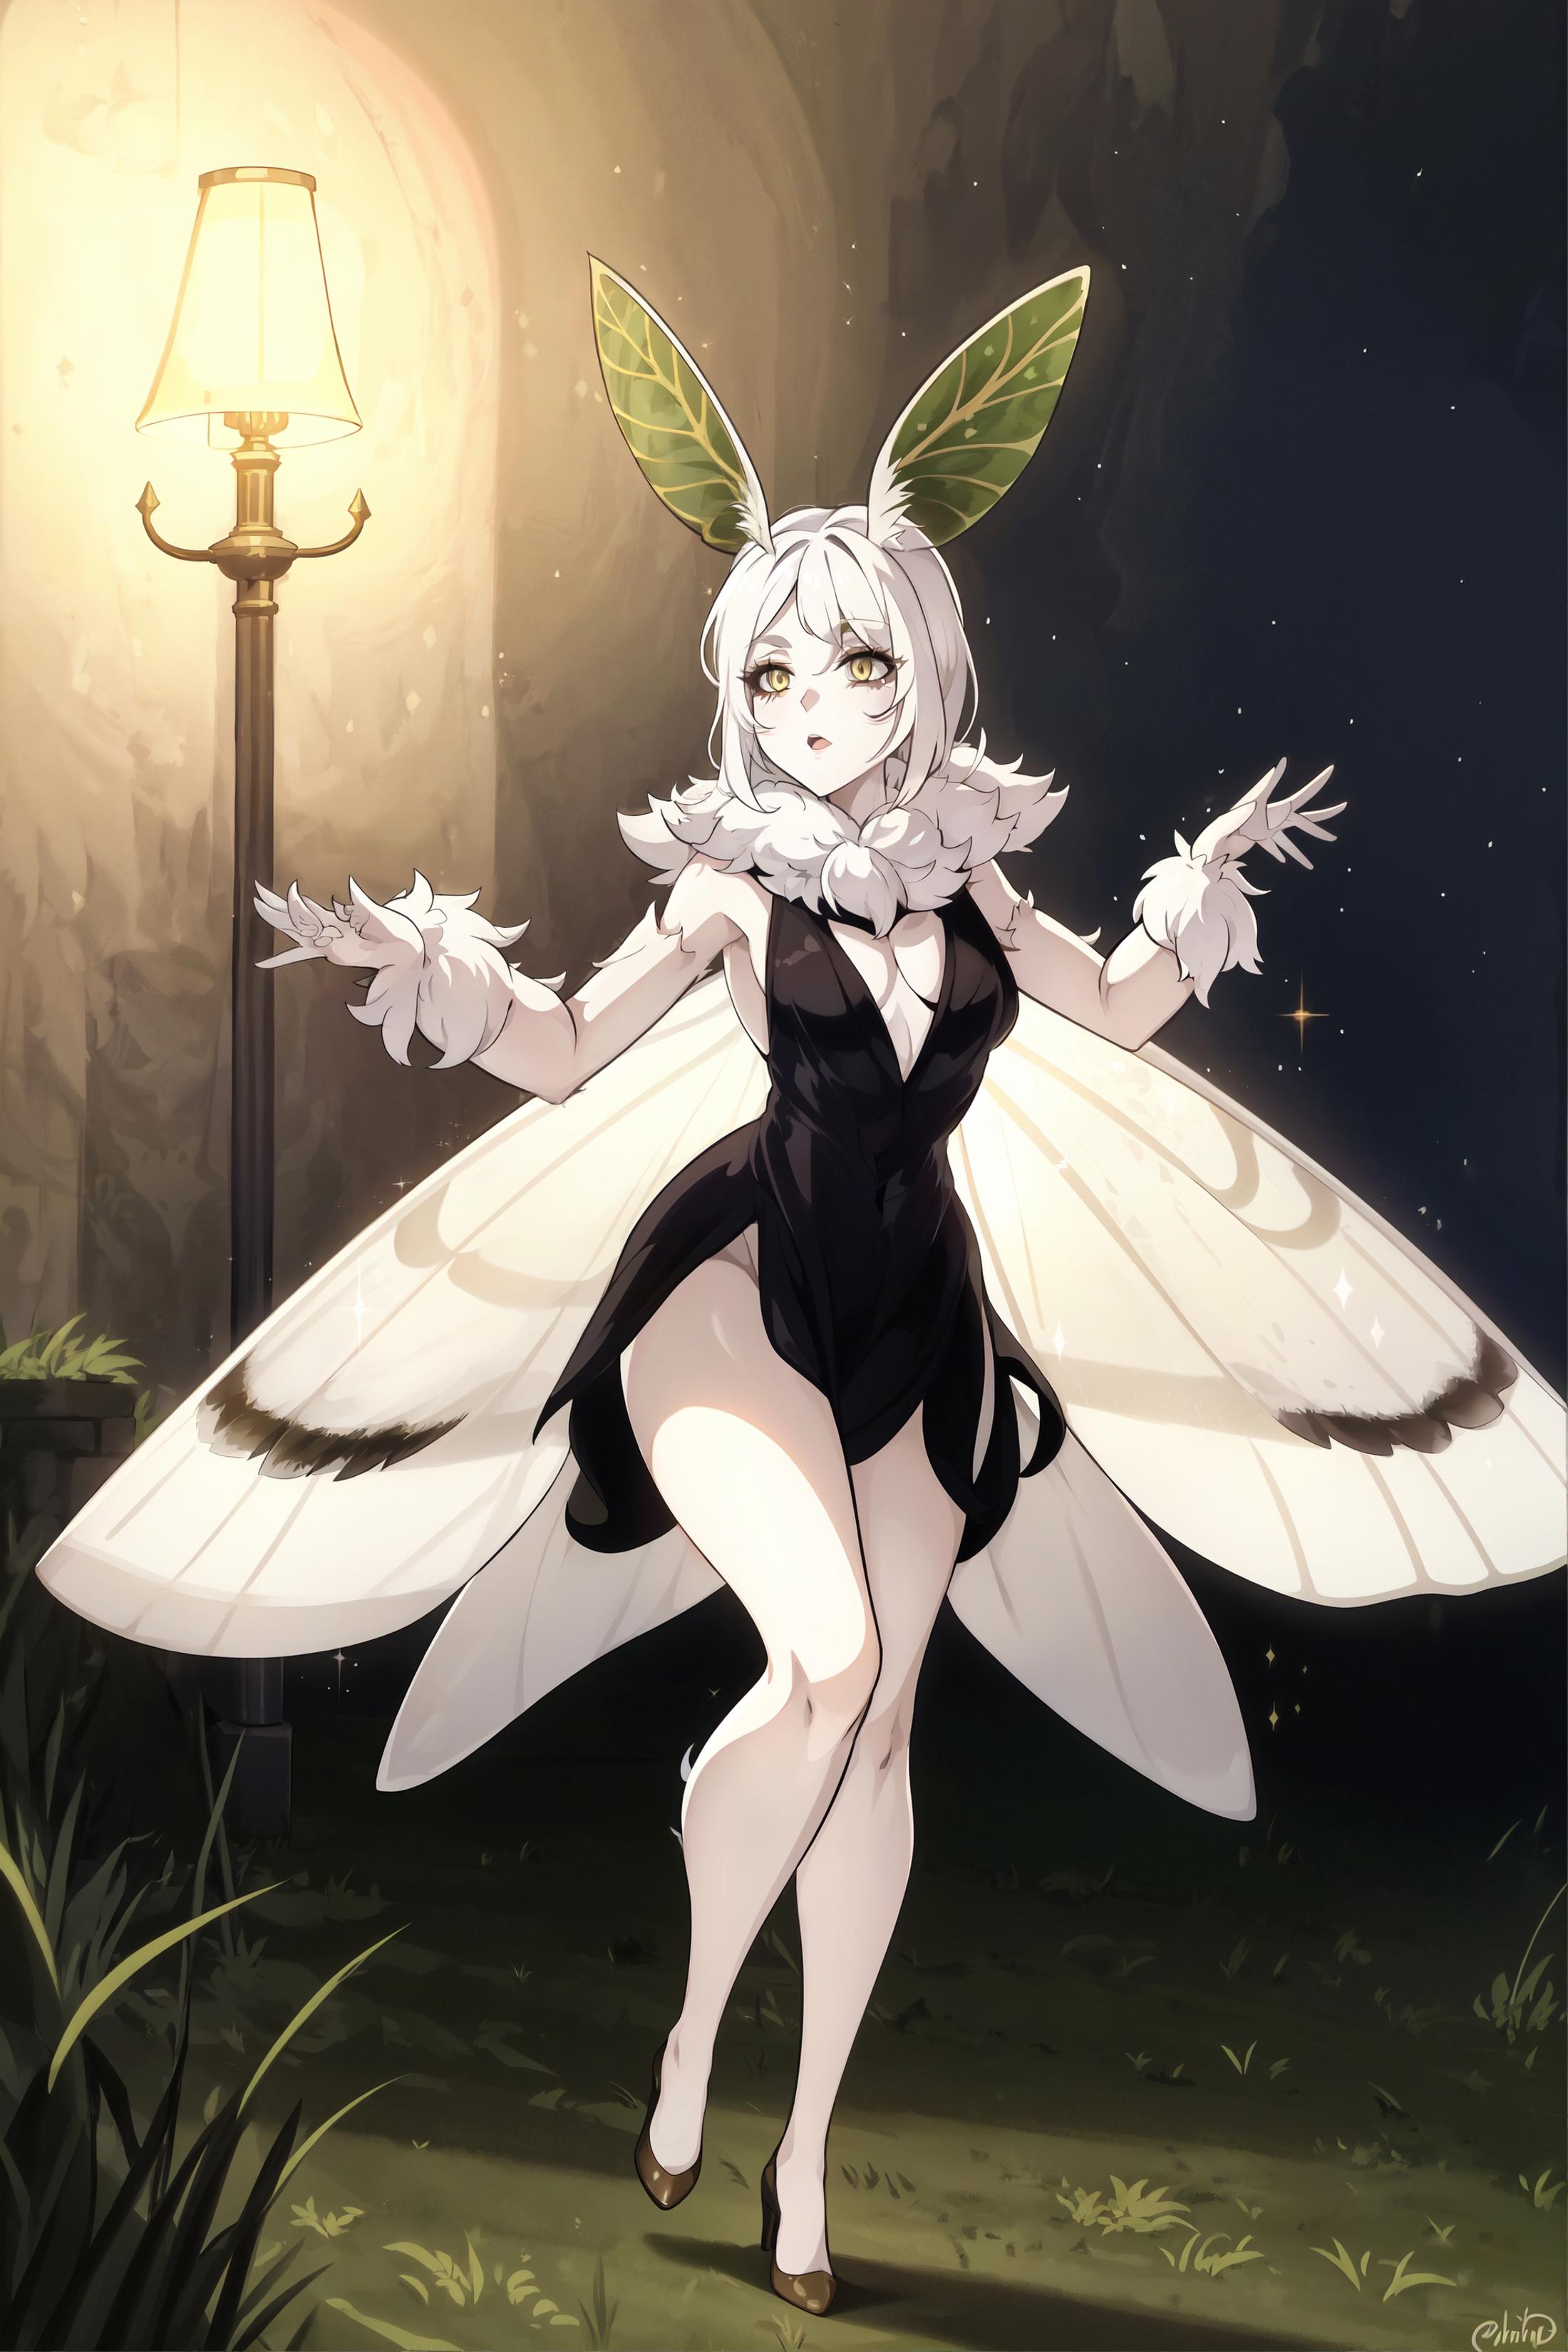 Moth Girls [Lycoris] image by PotatCat